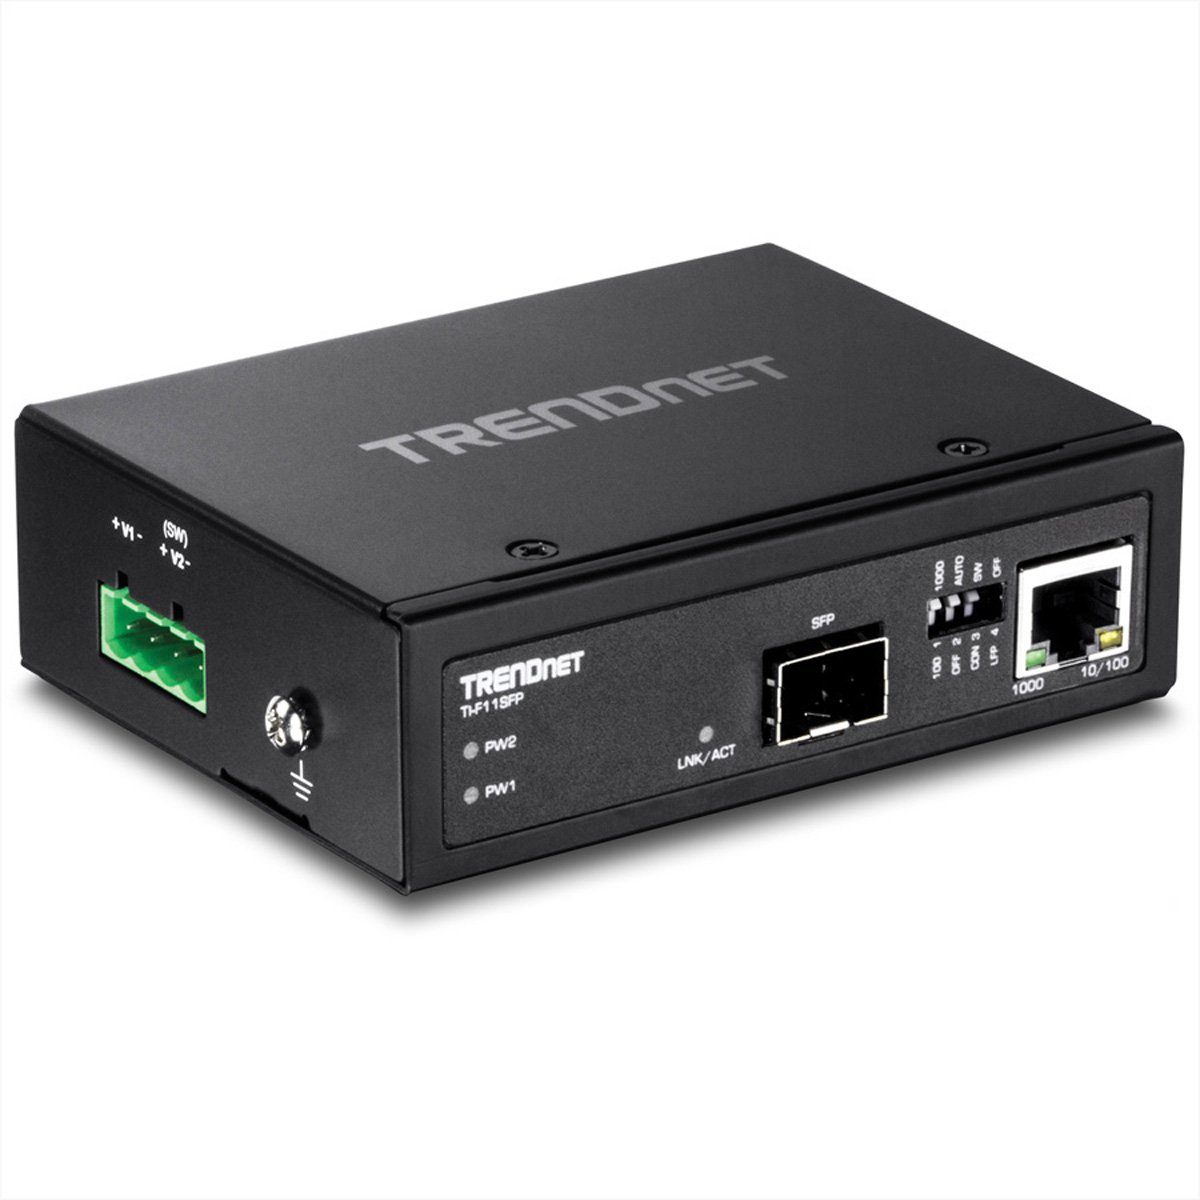 Netzwerk-Switch TI-F11SFP Trendnet Medienkonverter